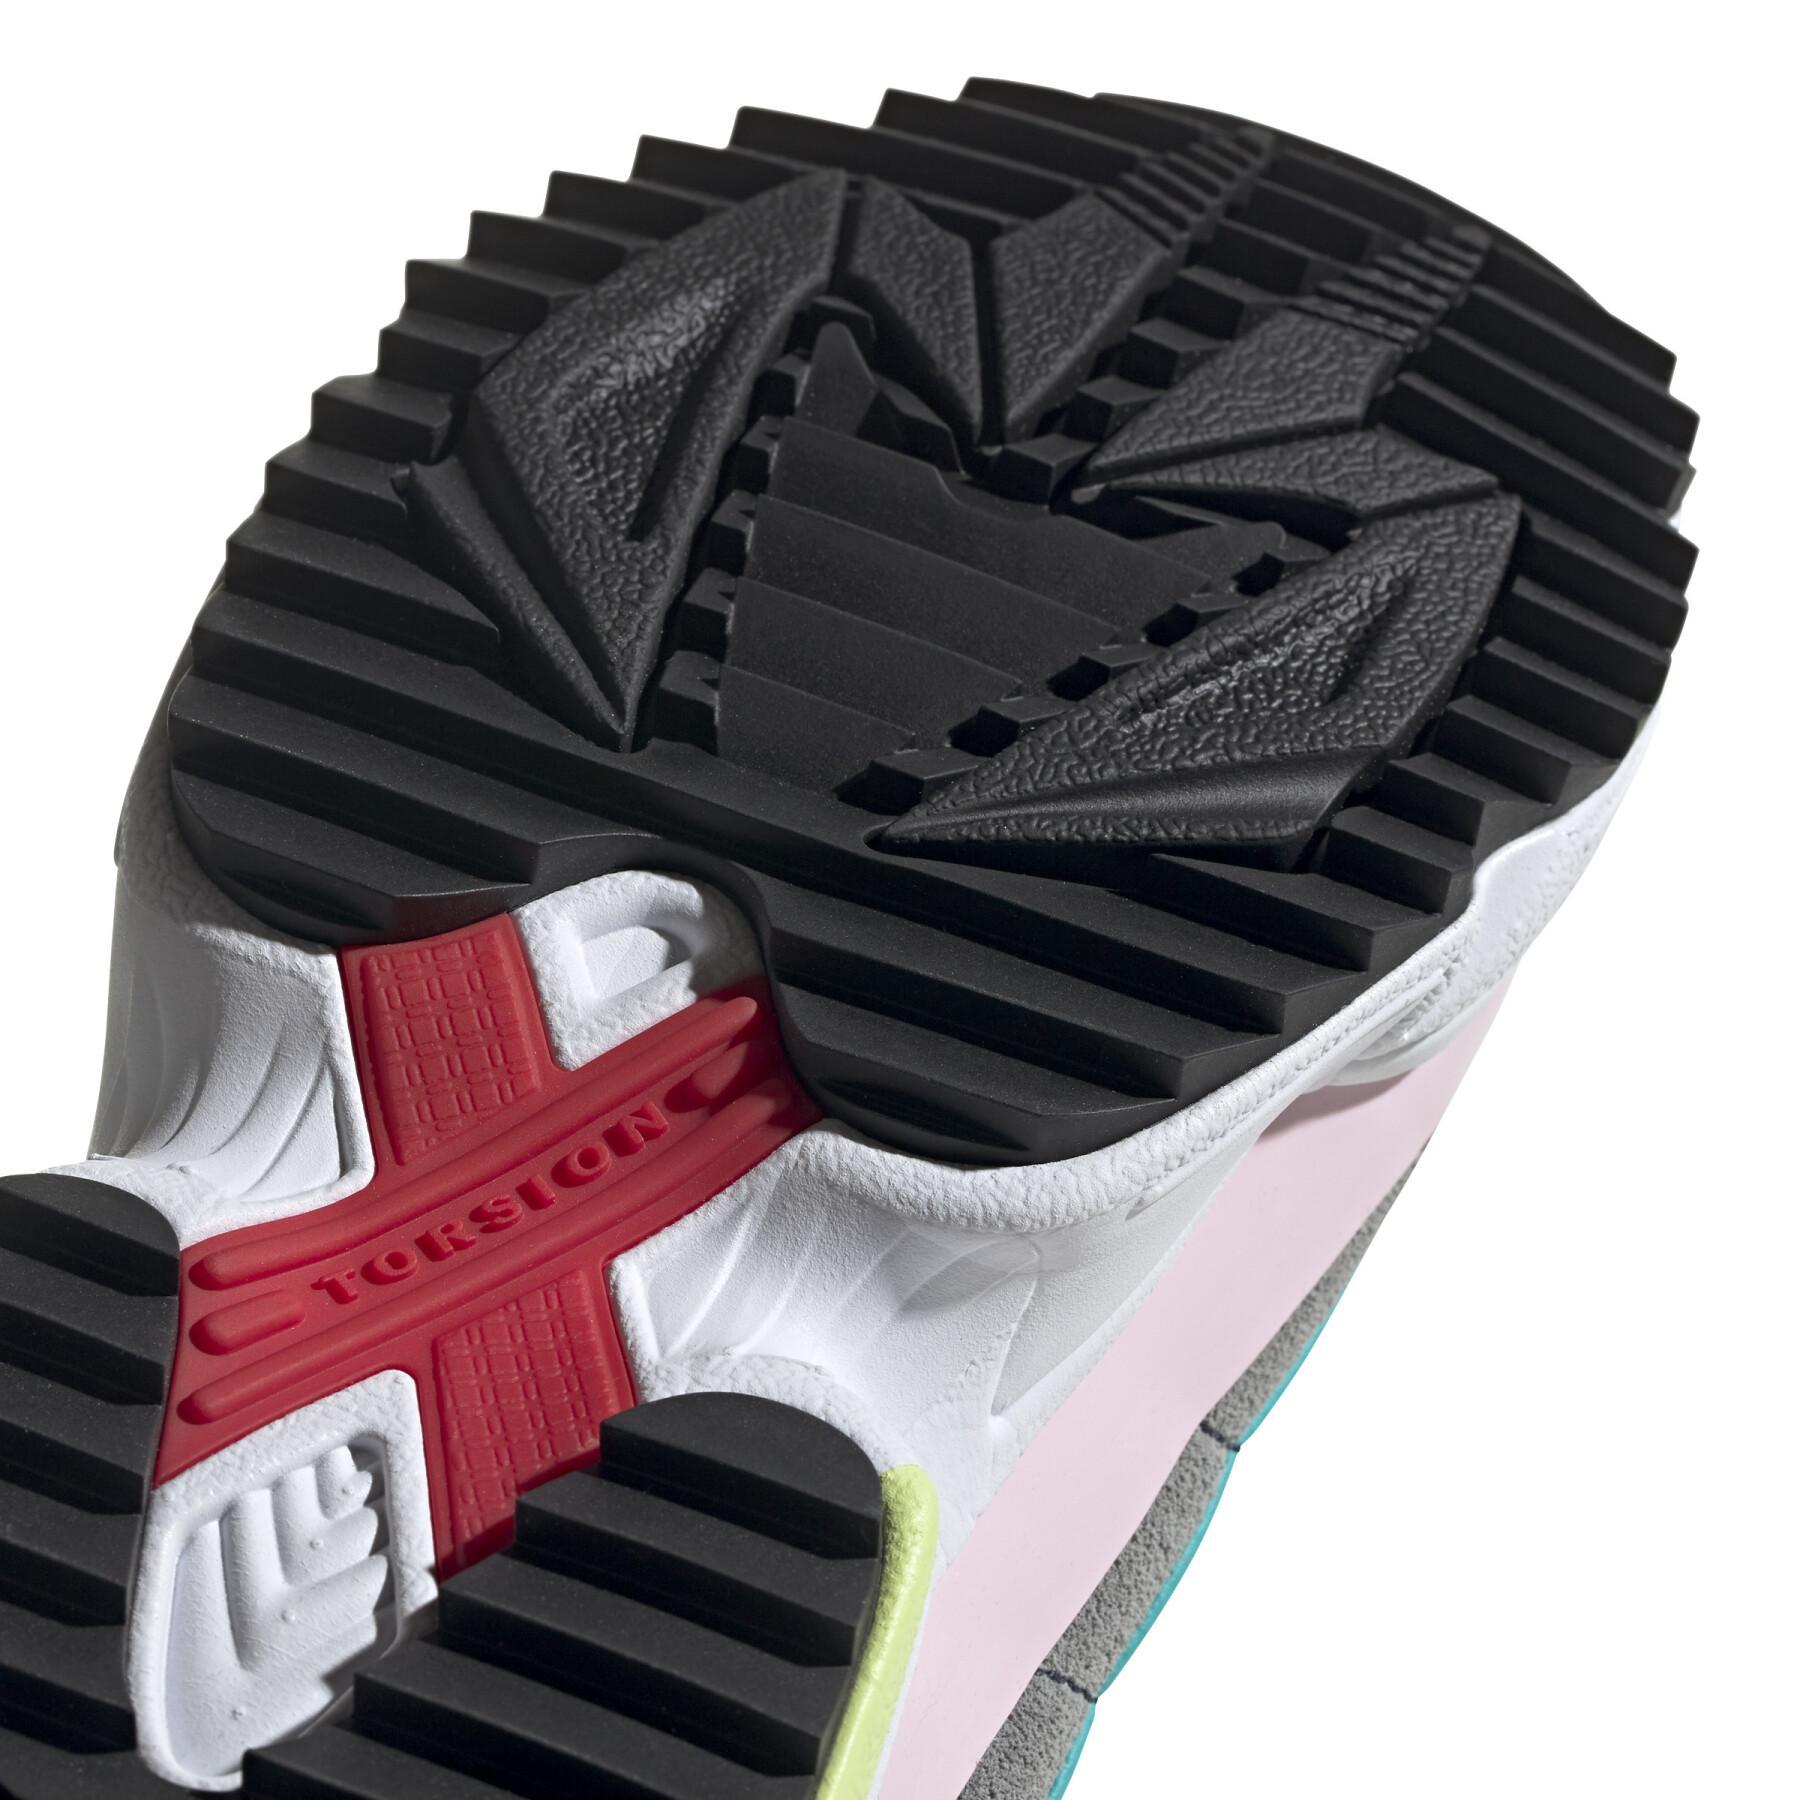 Sneakers adidas Originals Kiellor Xtra